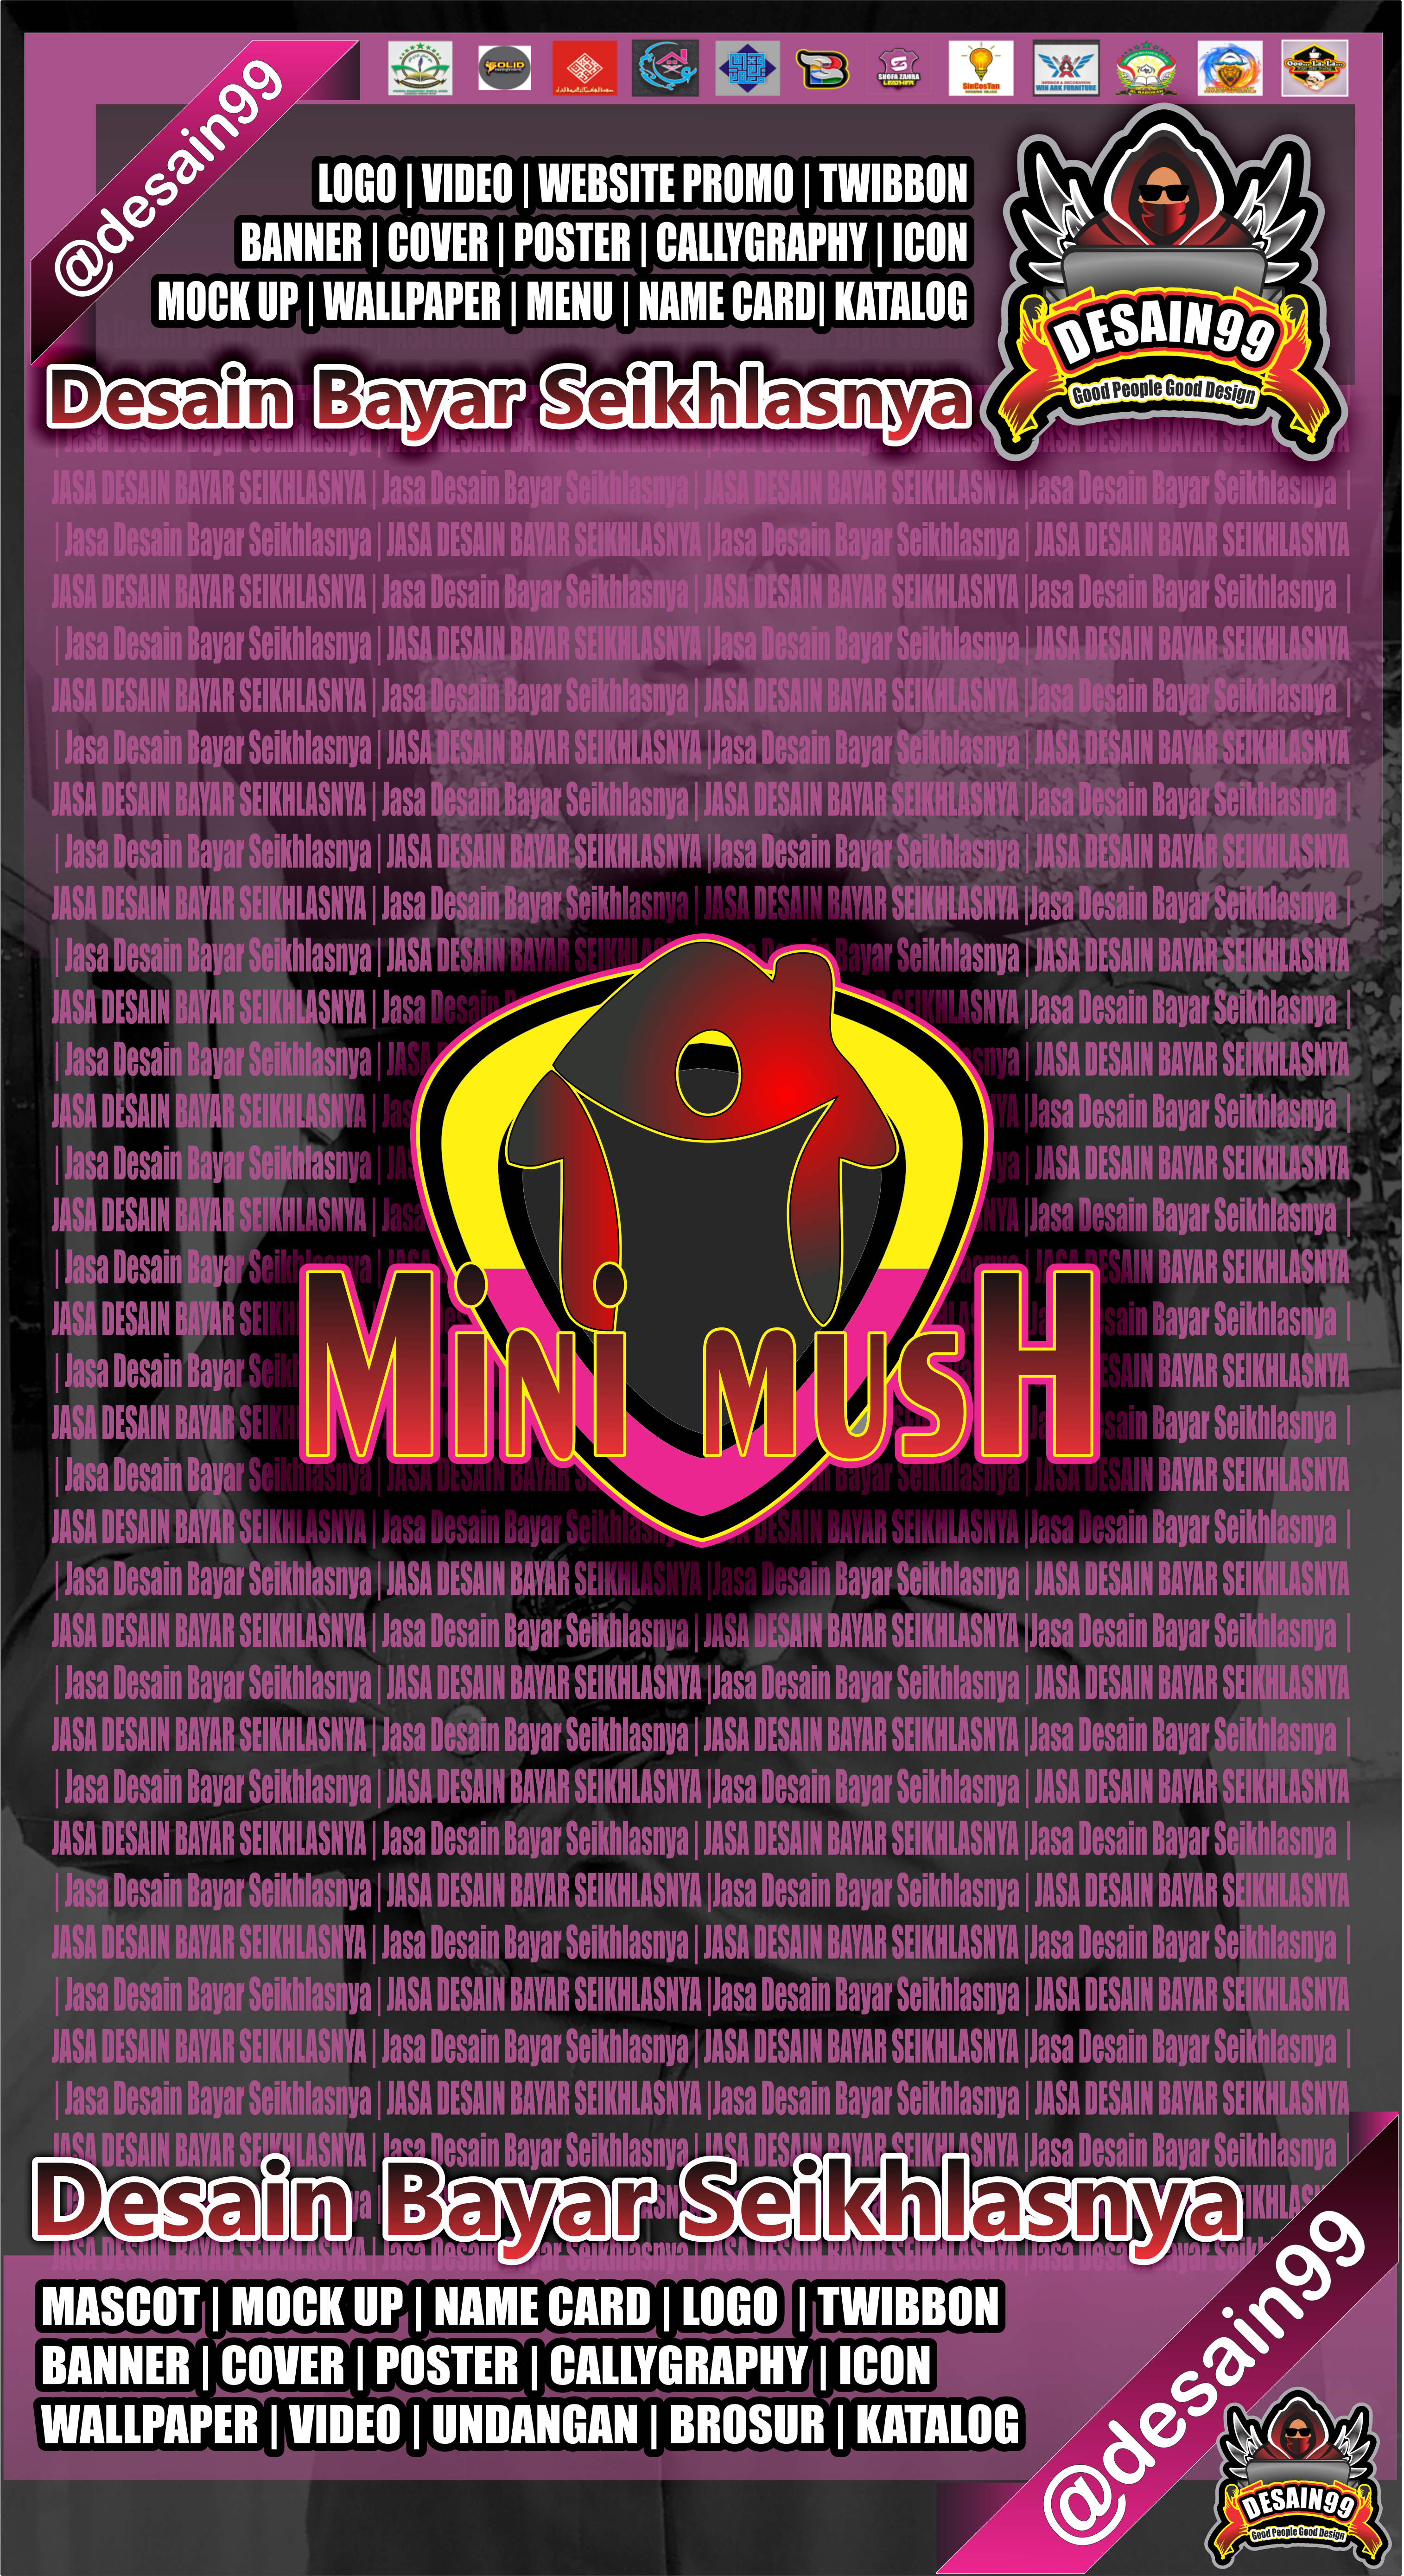 Gambar Desain Logo Mini Mush Jasa Desain Bayar Seikhlasnya